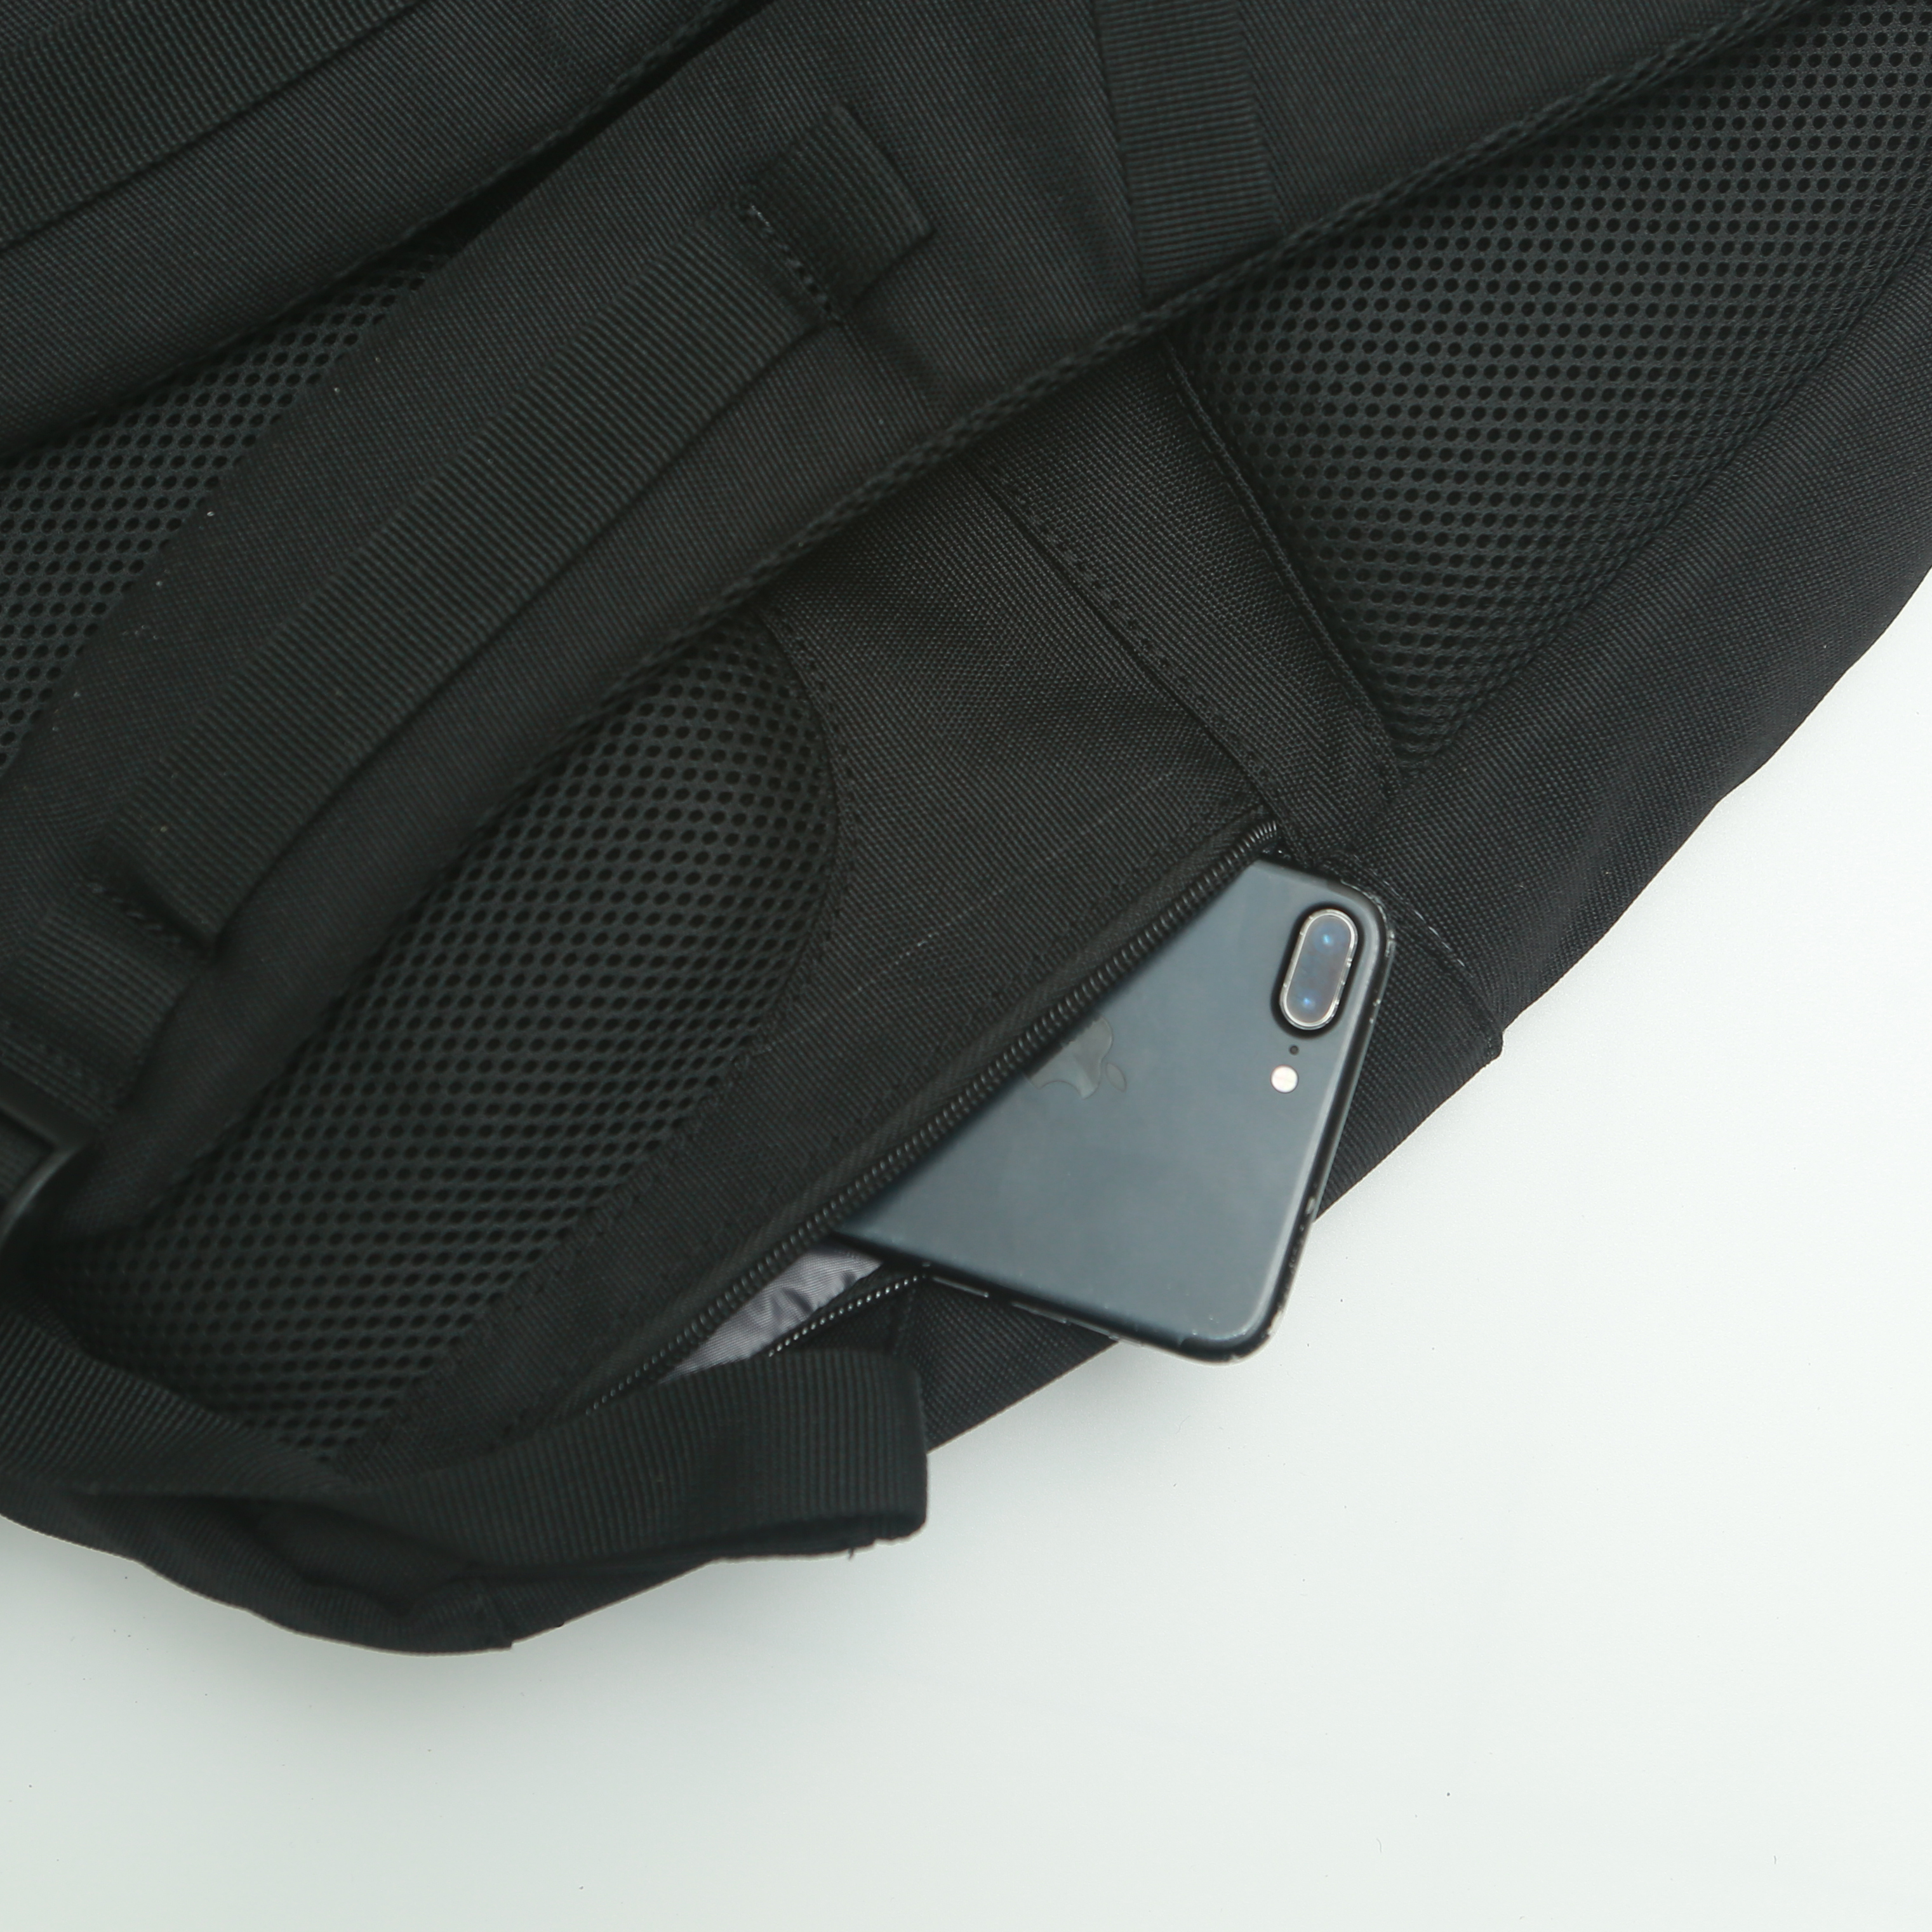 Balo unisex Dynamic Backpack chính hãng NATOLI nhiều ngăn kháng nước siêu nhẹ thời trang phong cách cao cấp